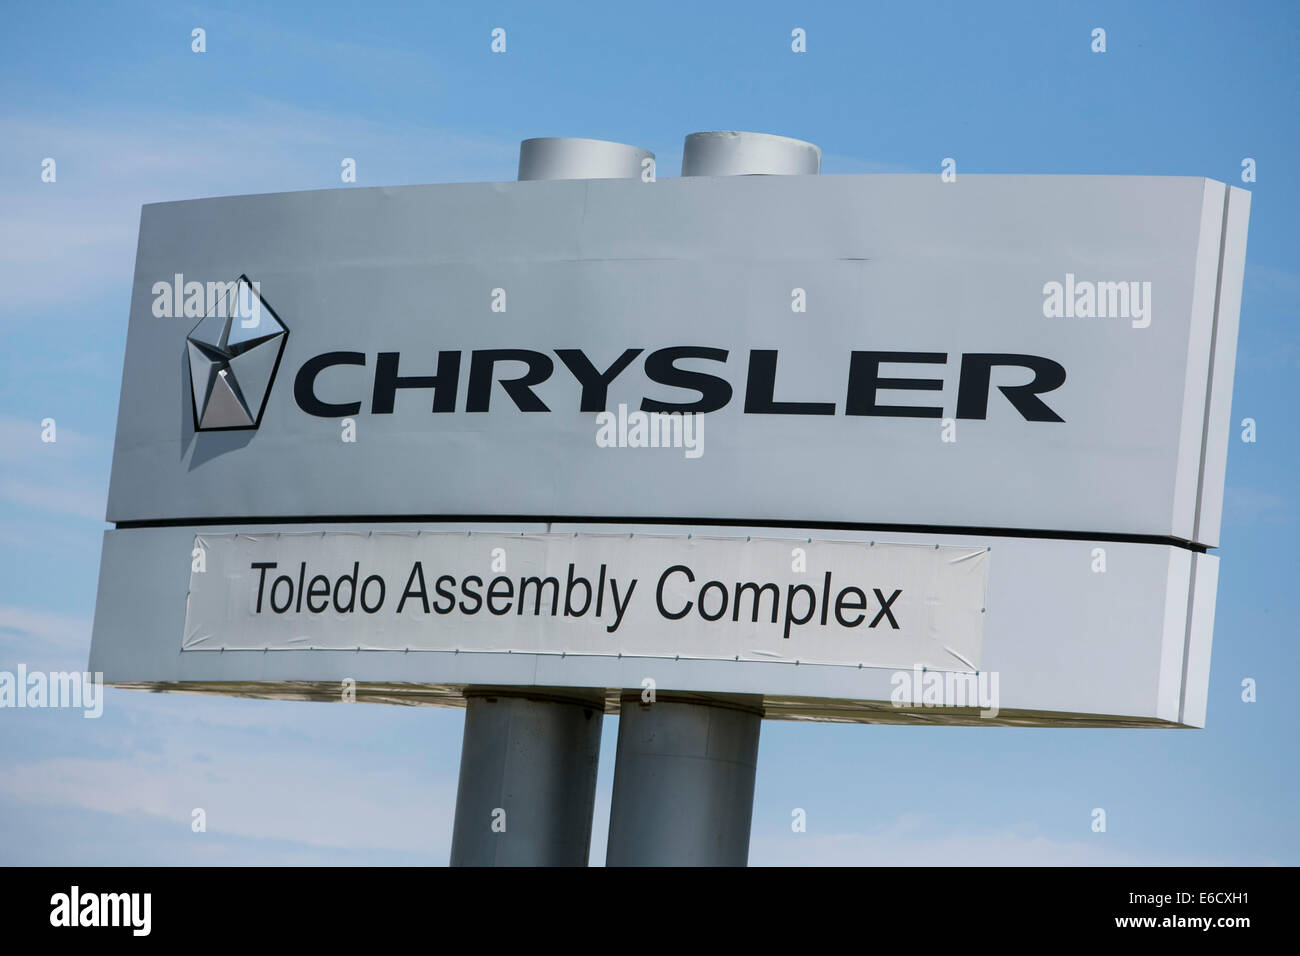 La Chrysler Toledo insieme complesso di Toledo, Ohio. Il sito di produzione di veicoli Jeep. Foto Stock